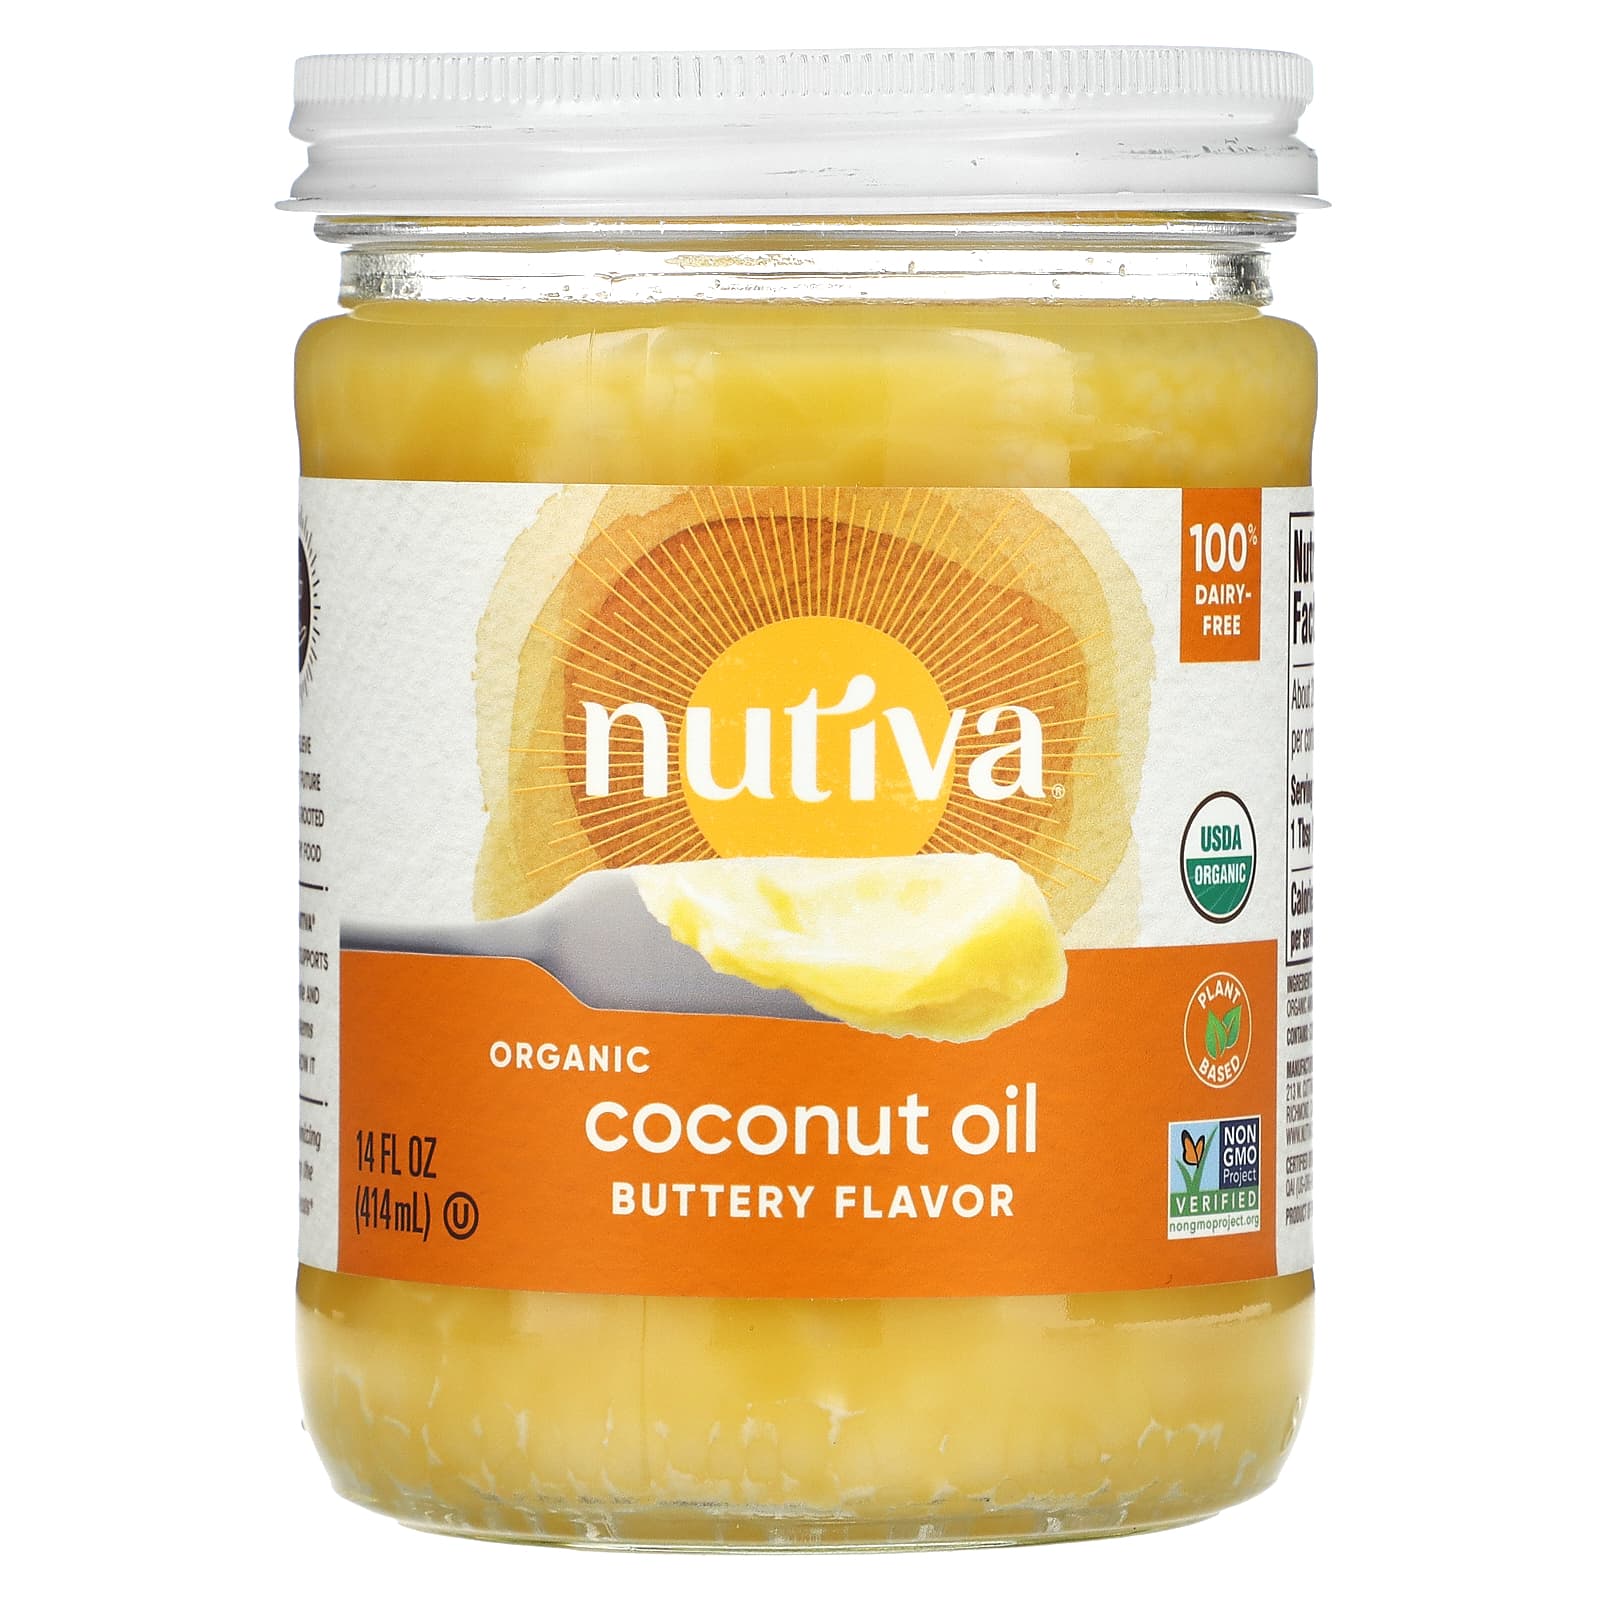 Nutiva Органическое кокосовое масло со вкусом сливочного масла 14 ж. унц. (414 мл)